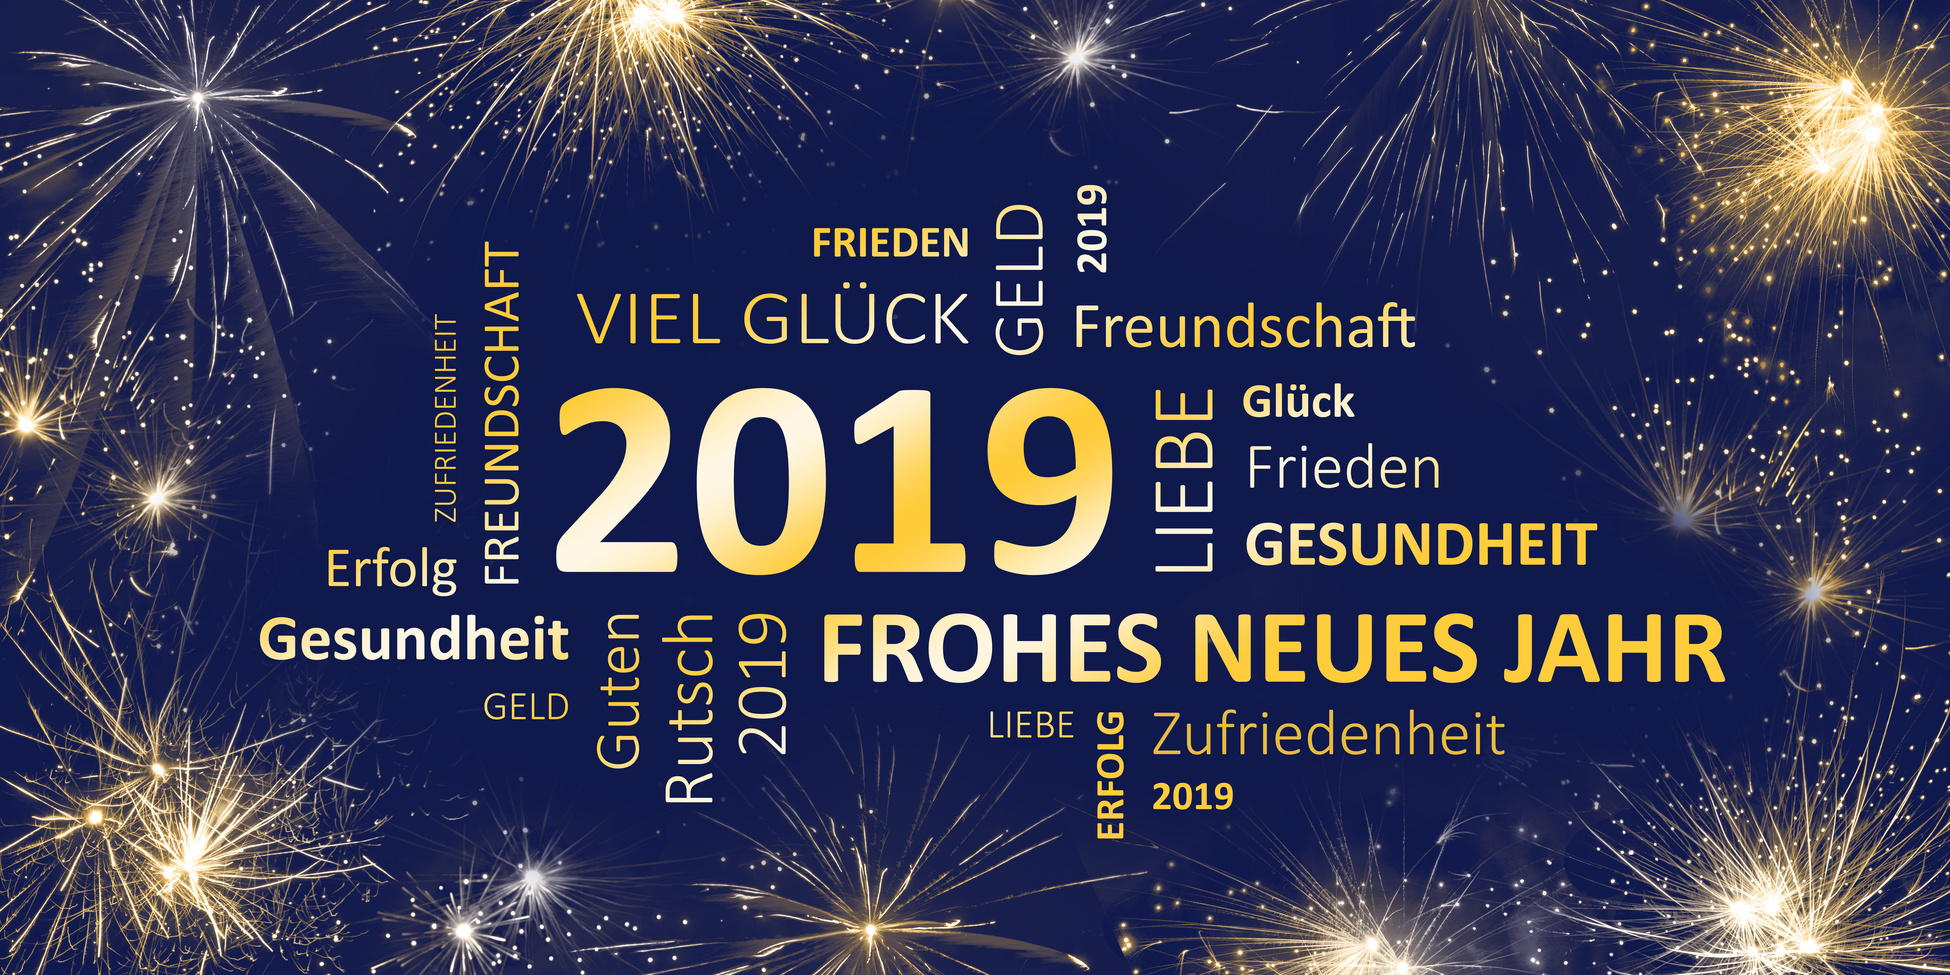 Neujahr 2019 - Frohes neues Jahr